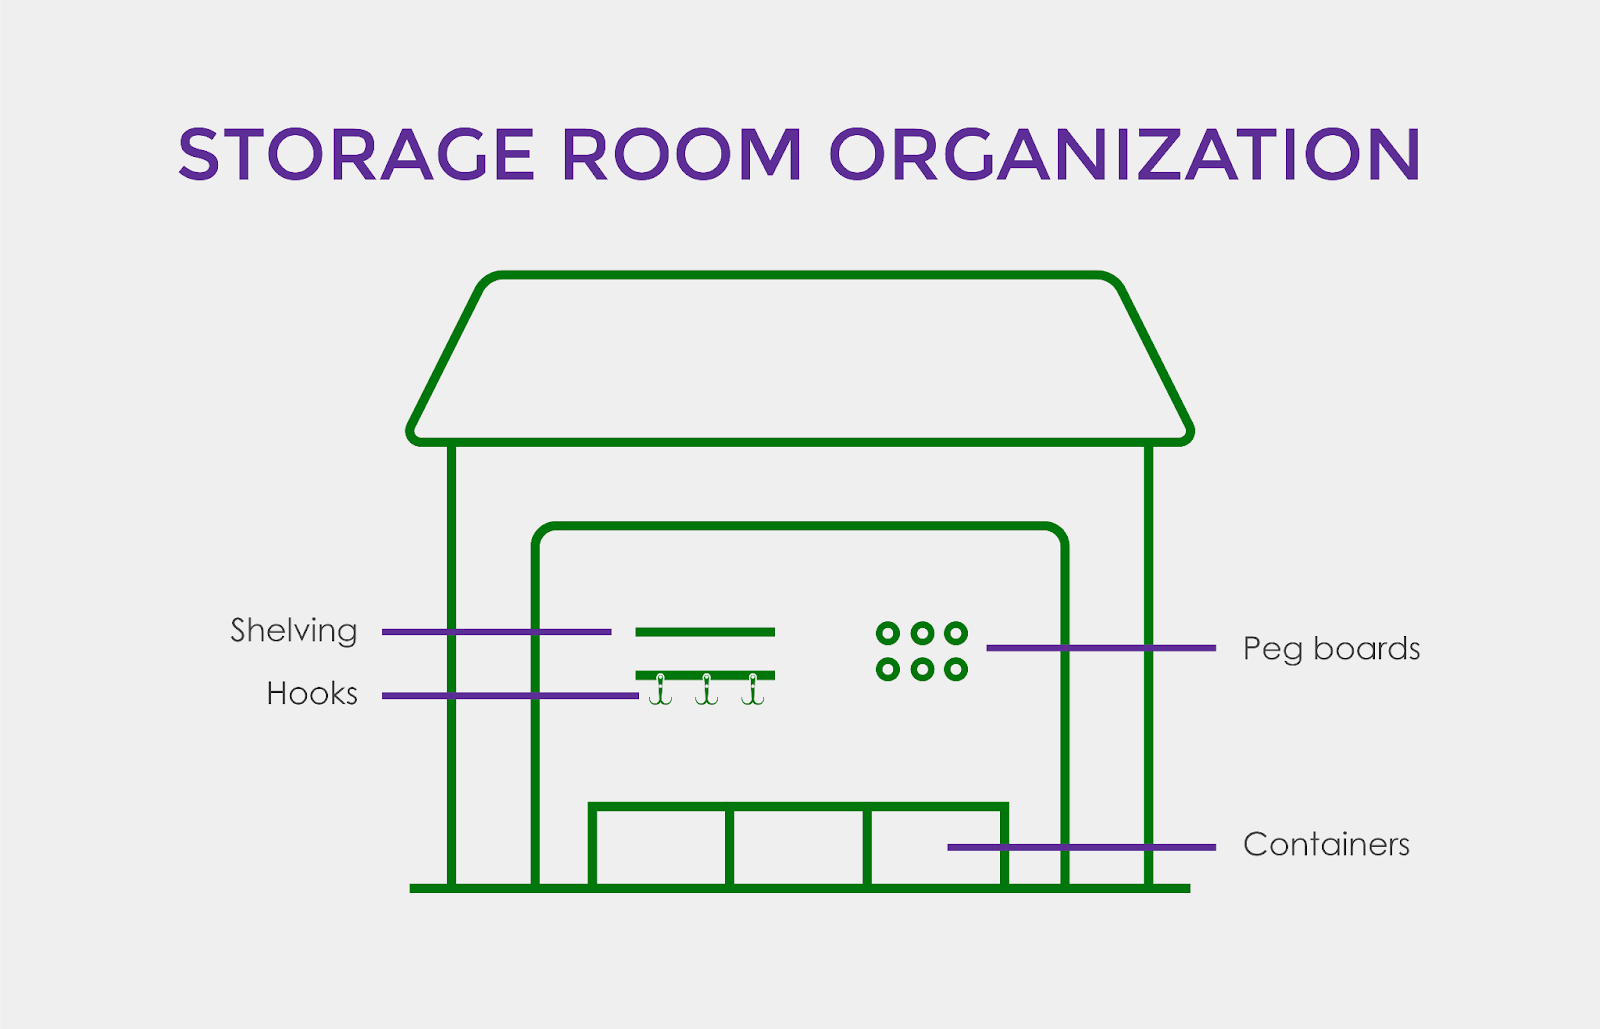 Storage room organization